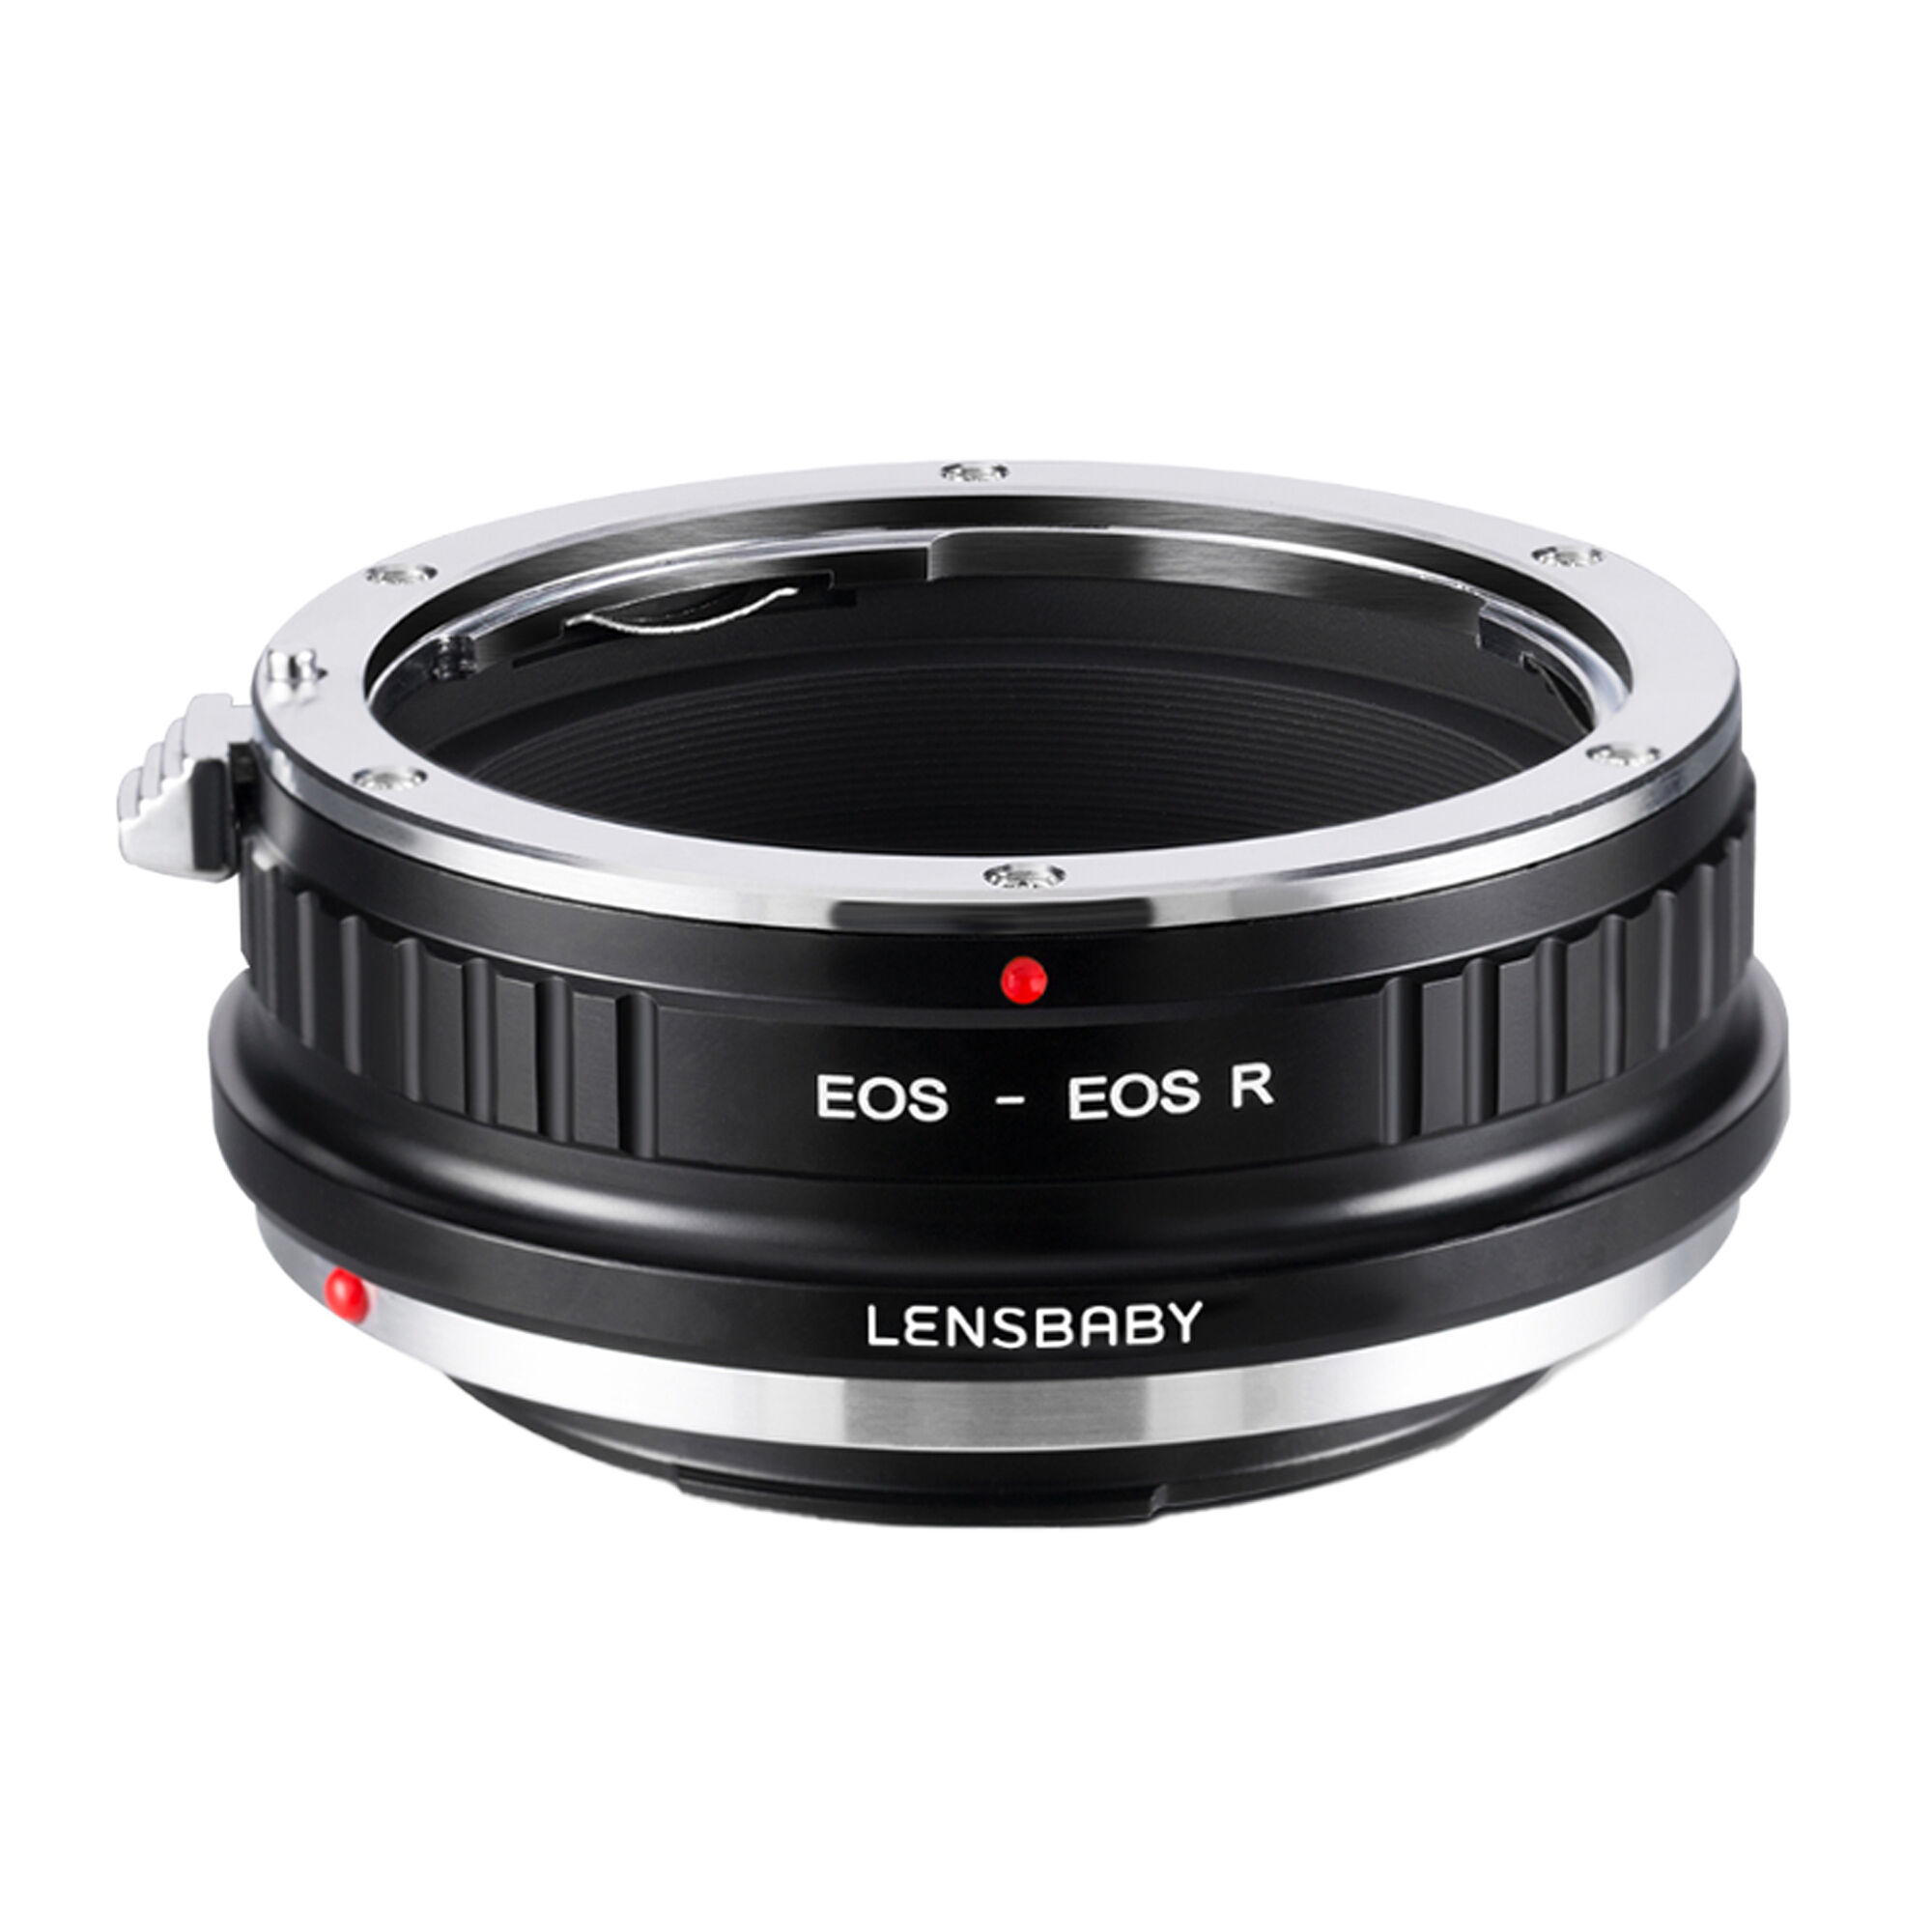 一眼レフ用のレンズベビーをミラーレスカメラで使える「Lensbaby マウントアダプター」発売 | 新製品情報 | ケンコー・トキナー